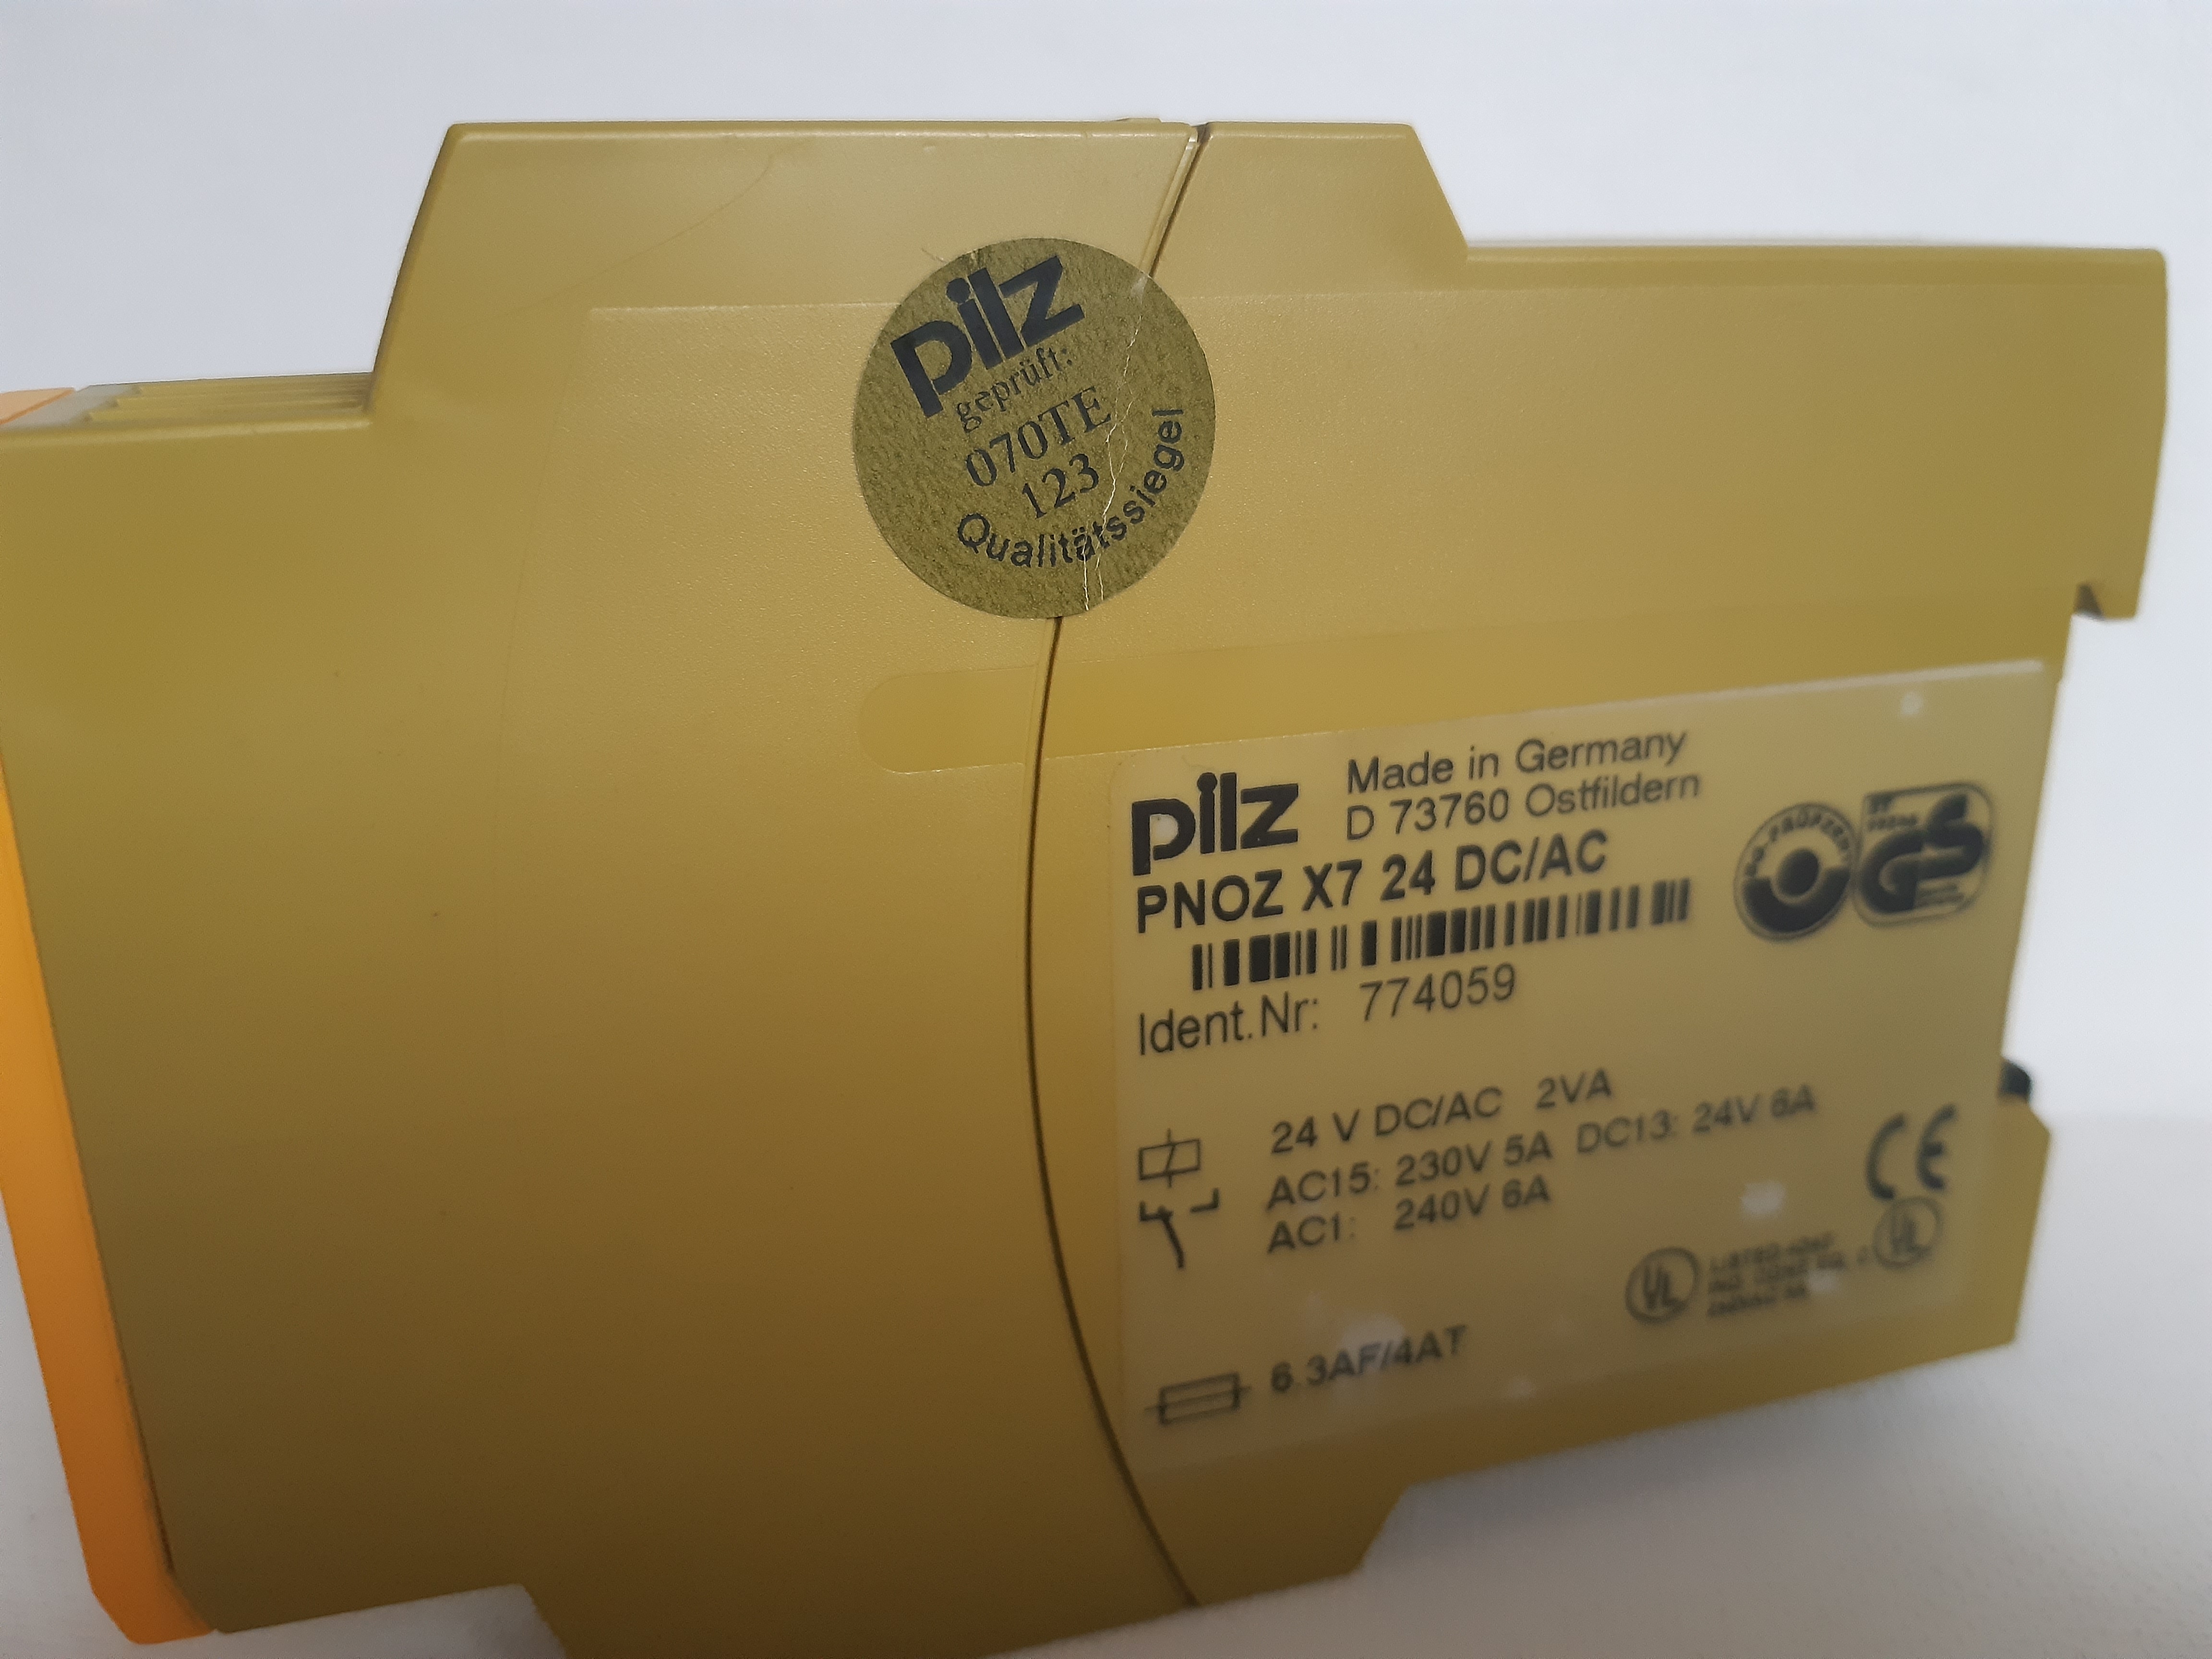 PNOZ X7 24VDC/AC Idnr 774059 Pilz safety relay